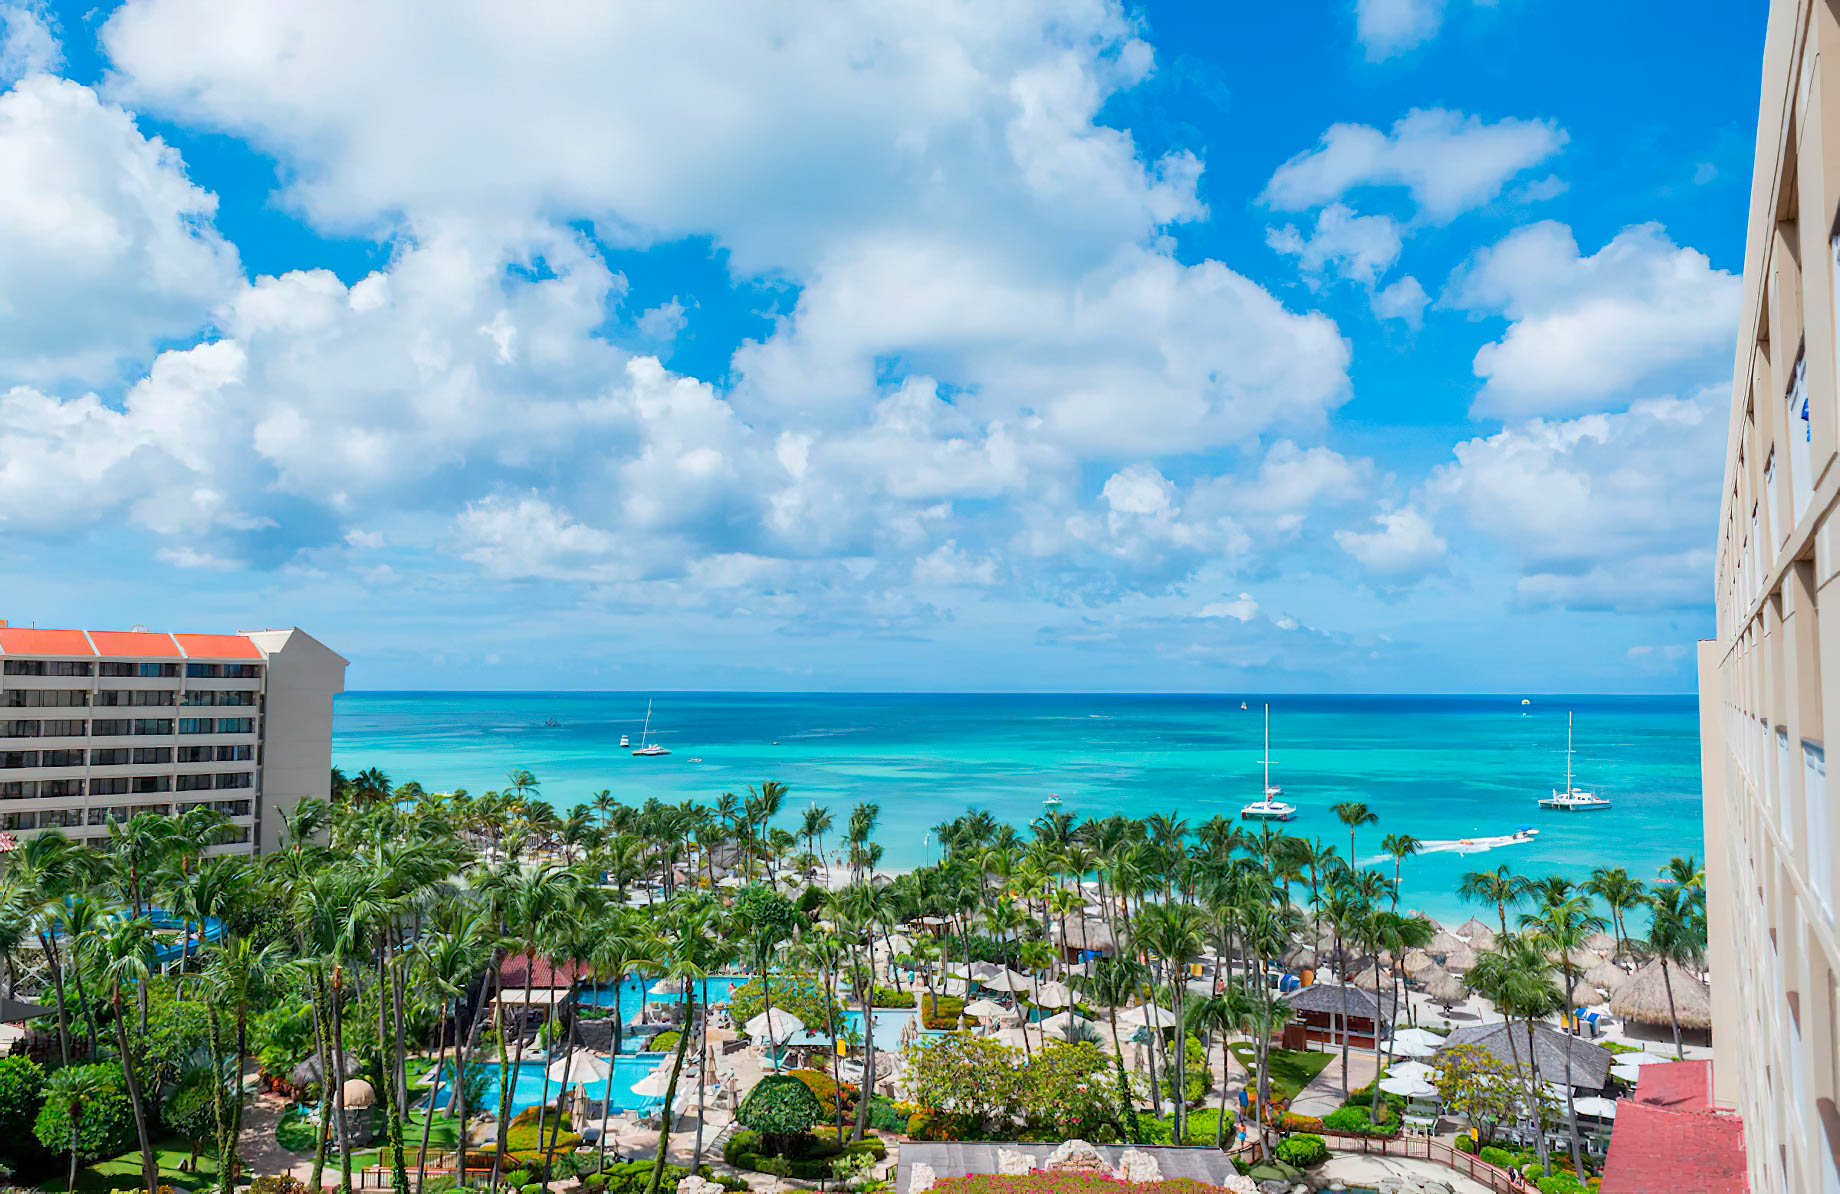 Hyatt Regency Aruba Resort & Casino – Noord, Aruba – Exterior View